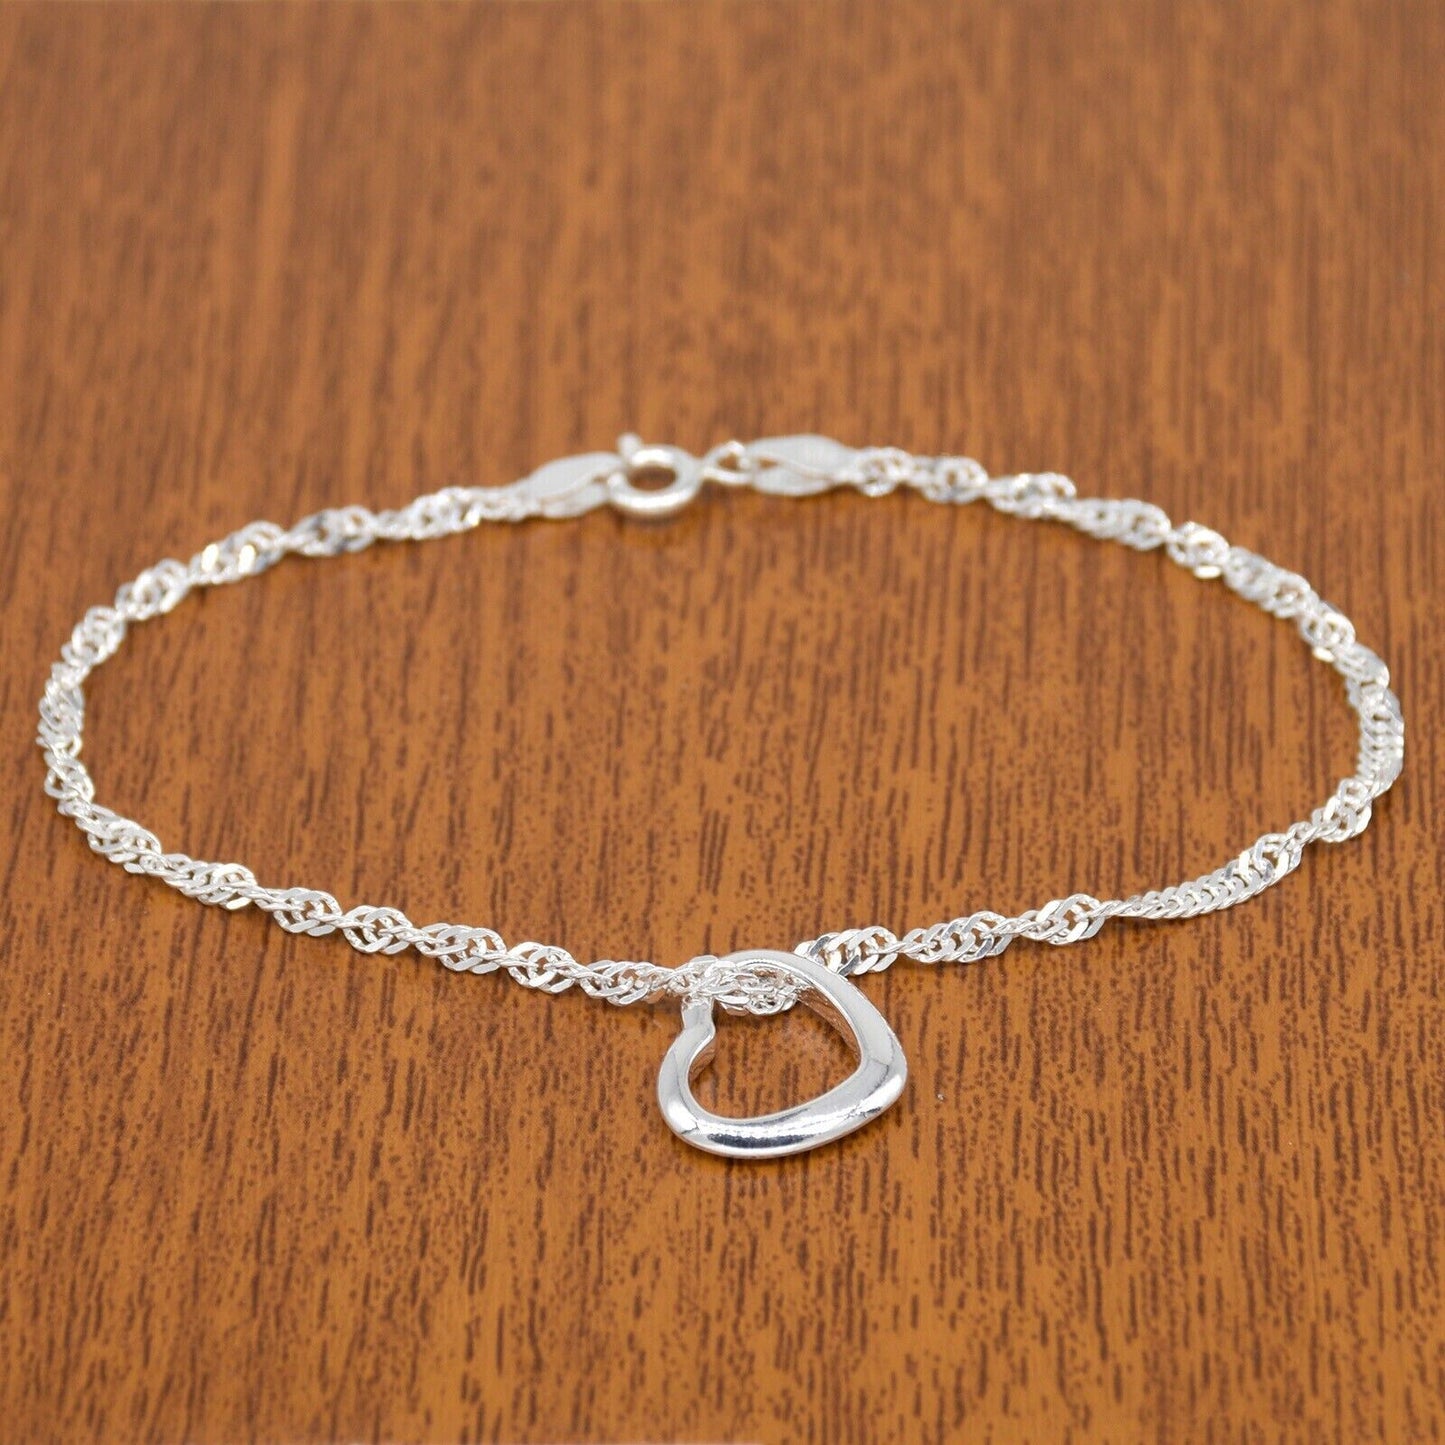 Genuine 925 Sterling Silver Singapore Chain Bracelet W/ Open Heart Charm